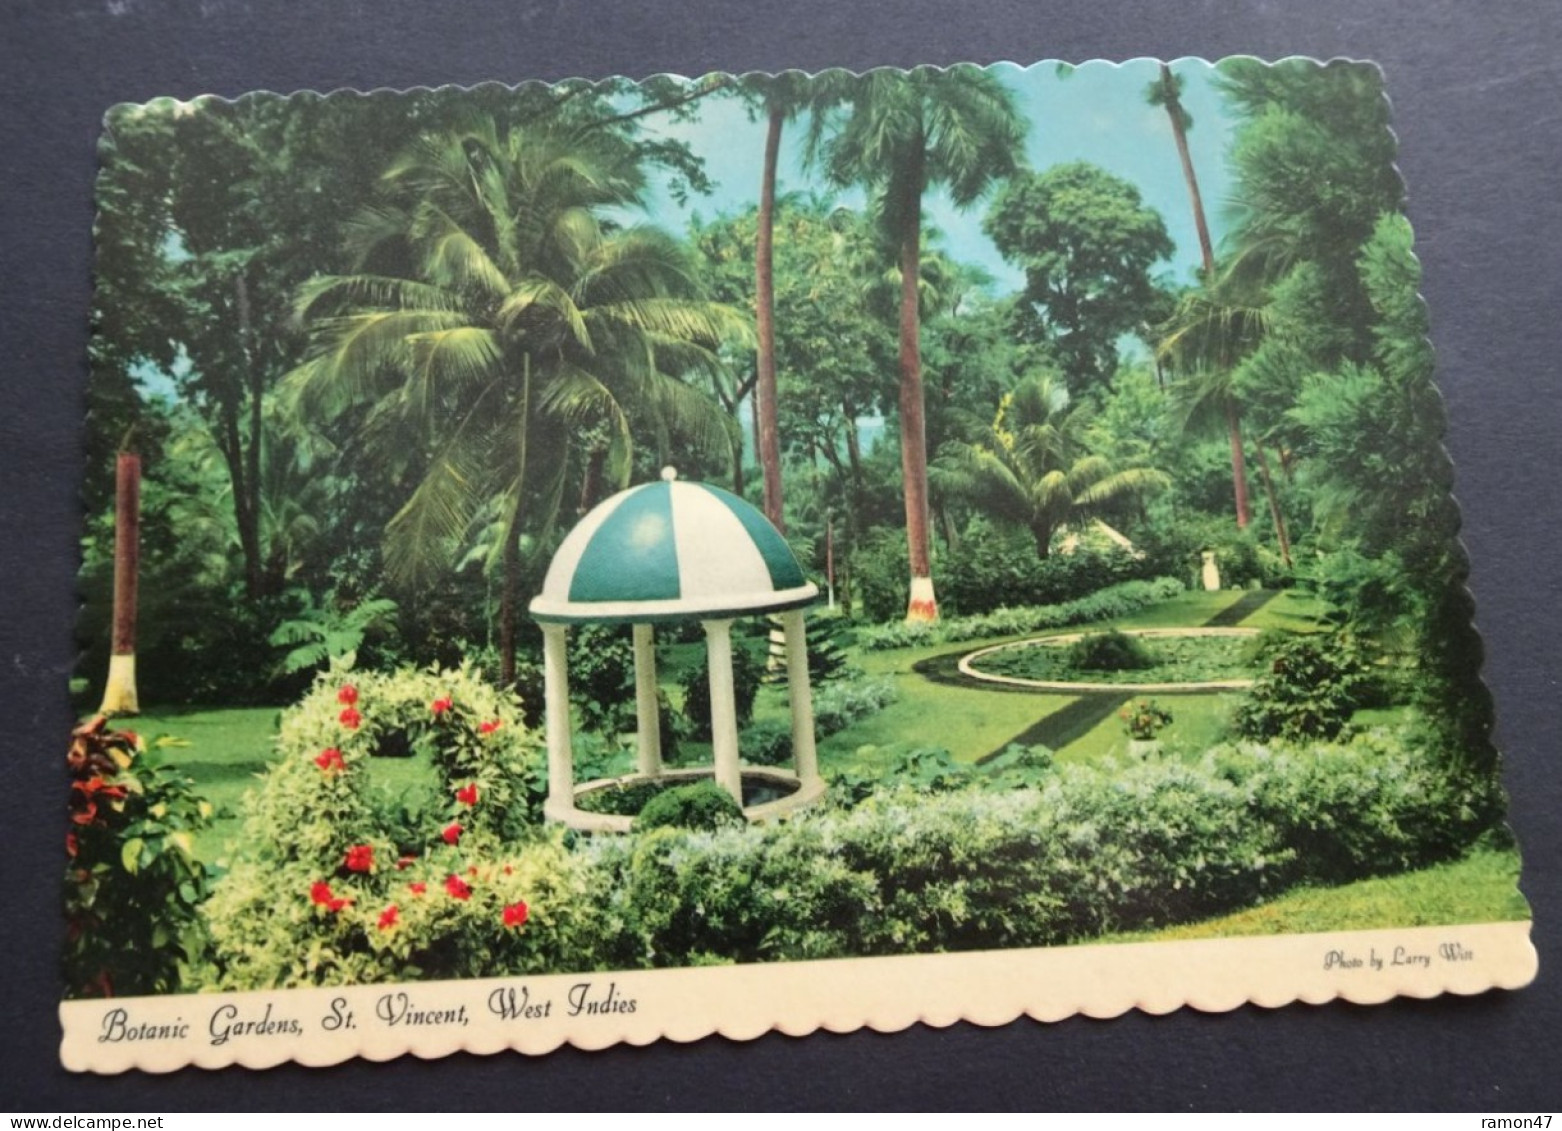 St. Vincent - Botanic Gardens - Photo Larry Witt - Dexter Press - Publisher Reliance Printery, St. Vincent, # DT-53655-C - Saint Vincent E Grenadine